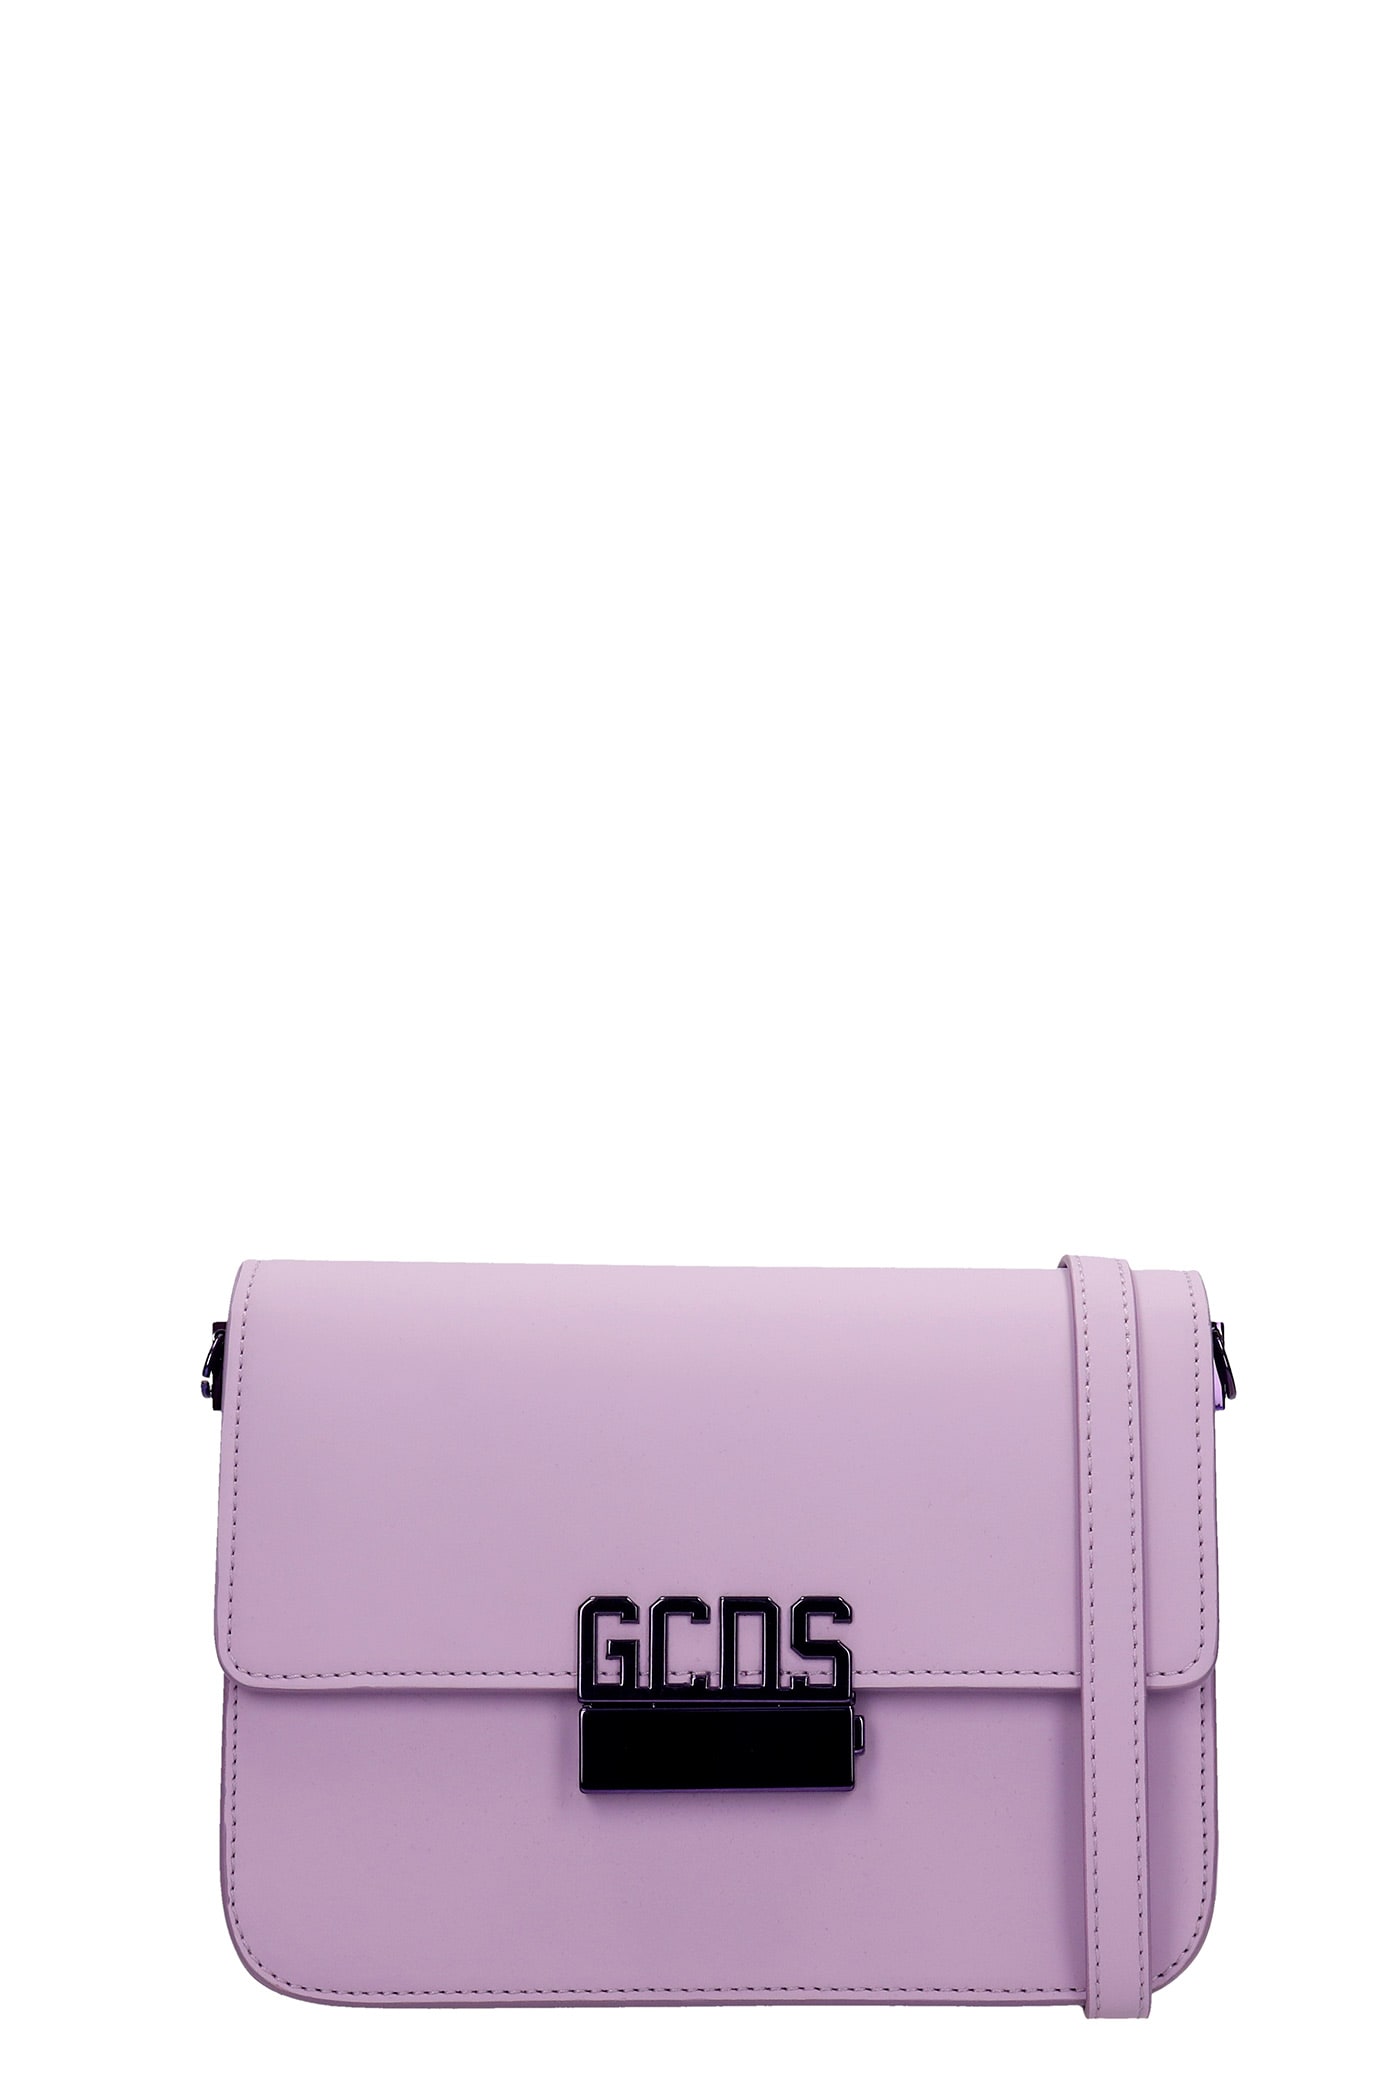 Gcds Shoulder Bag In Viola Leather